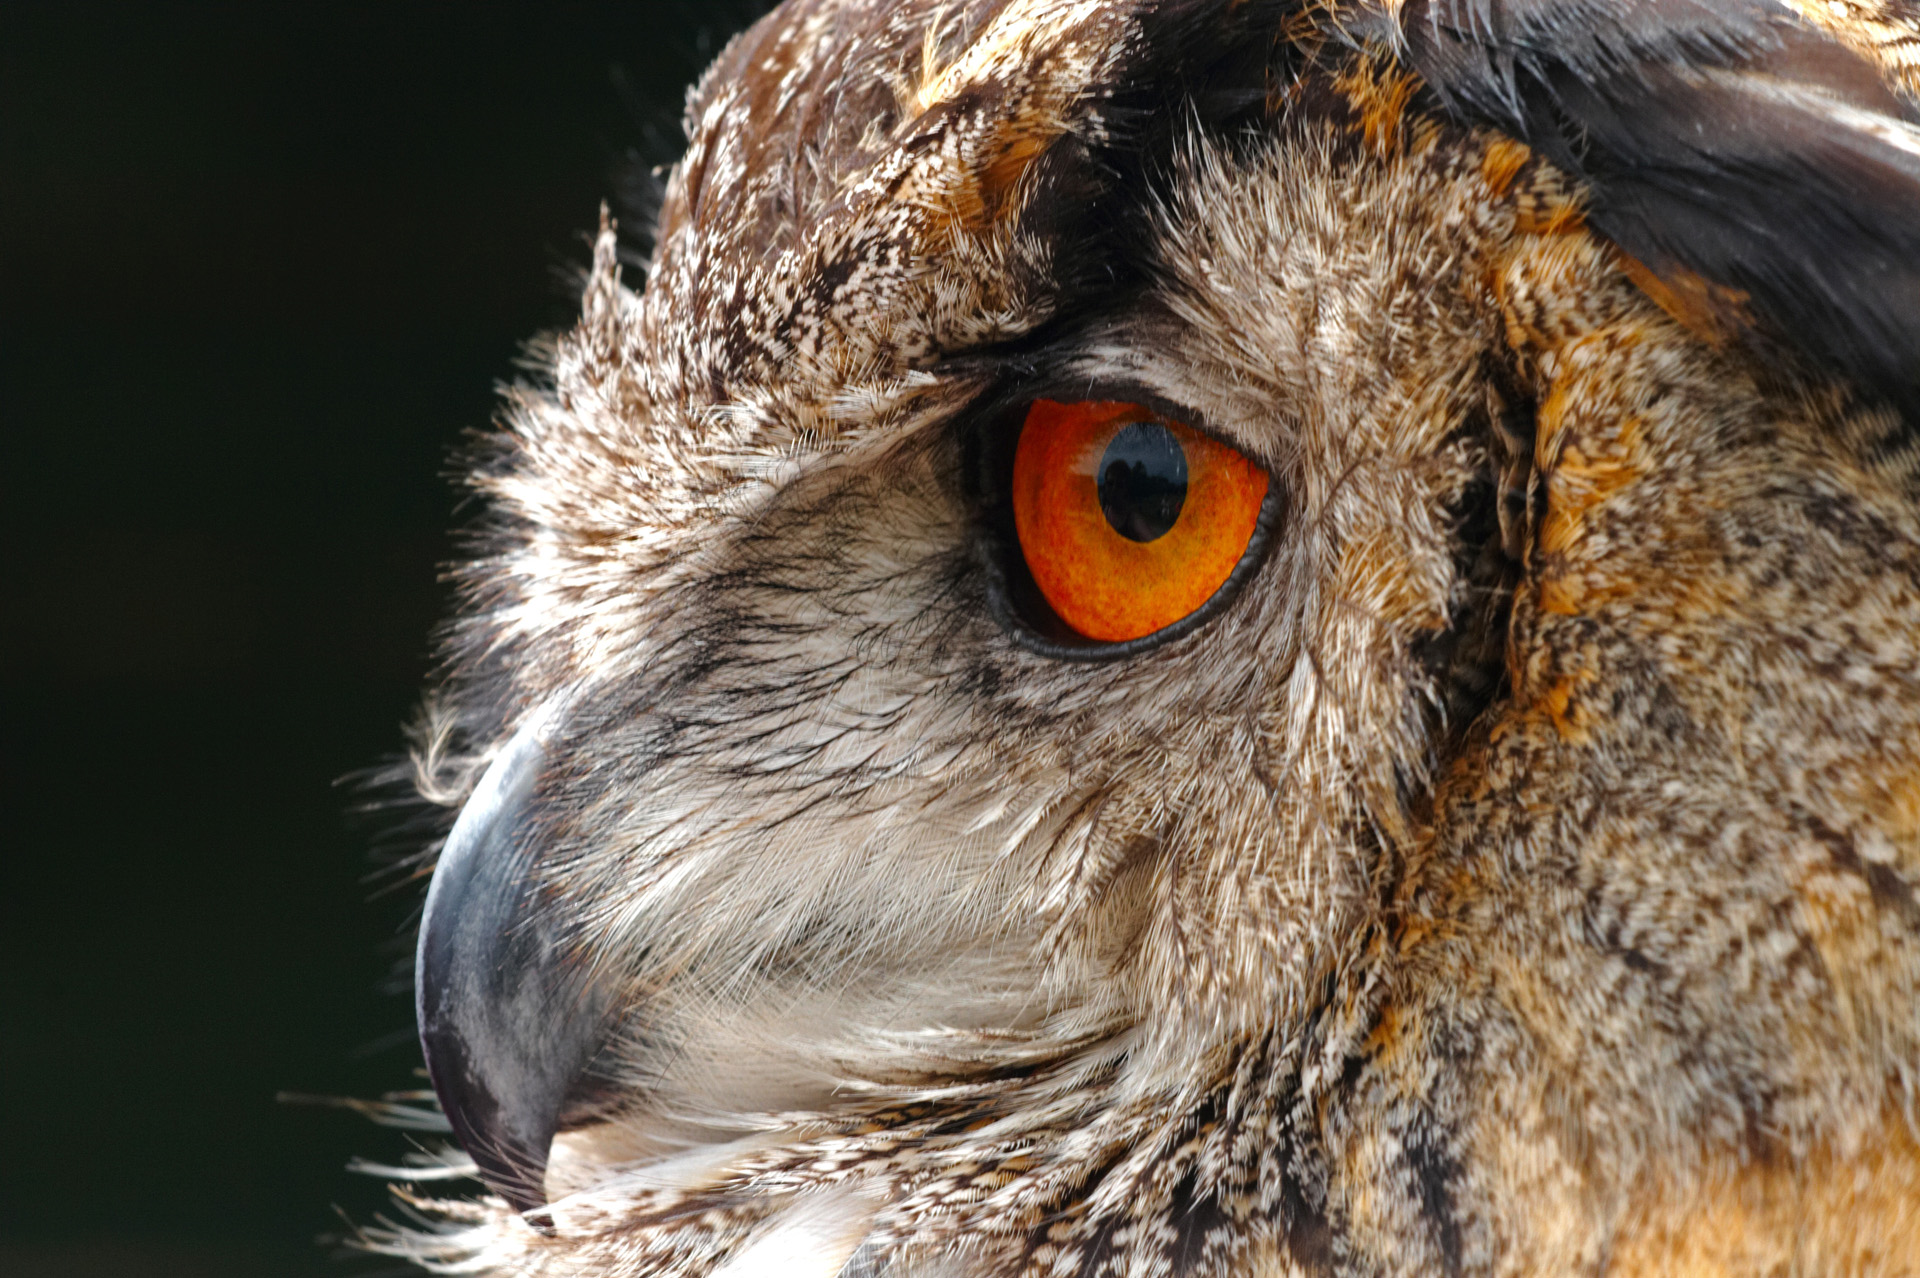 European Eagle Owl Side Profile